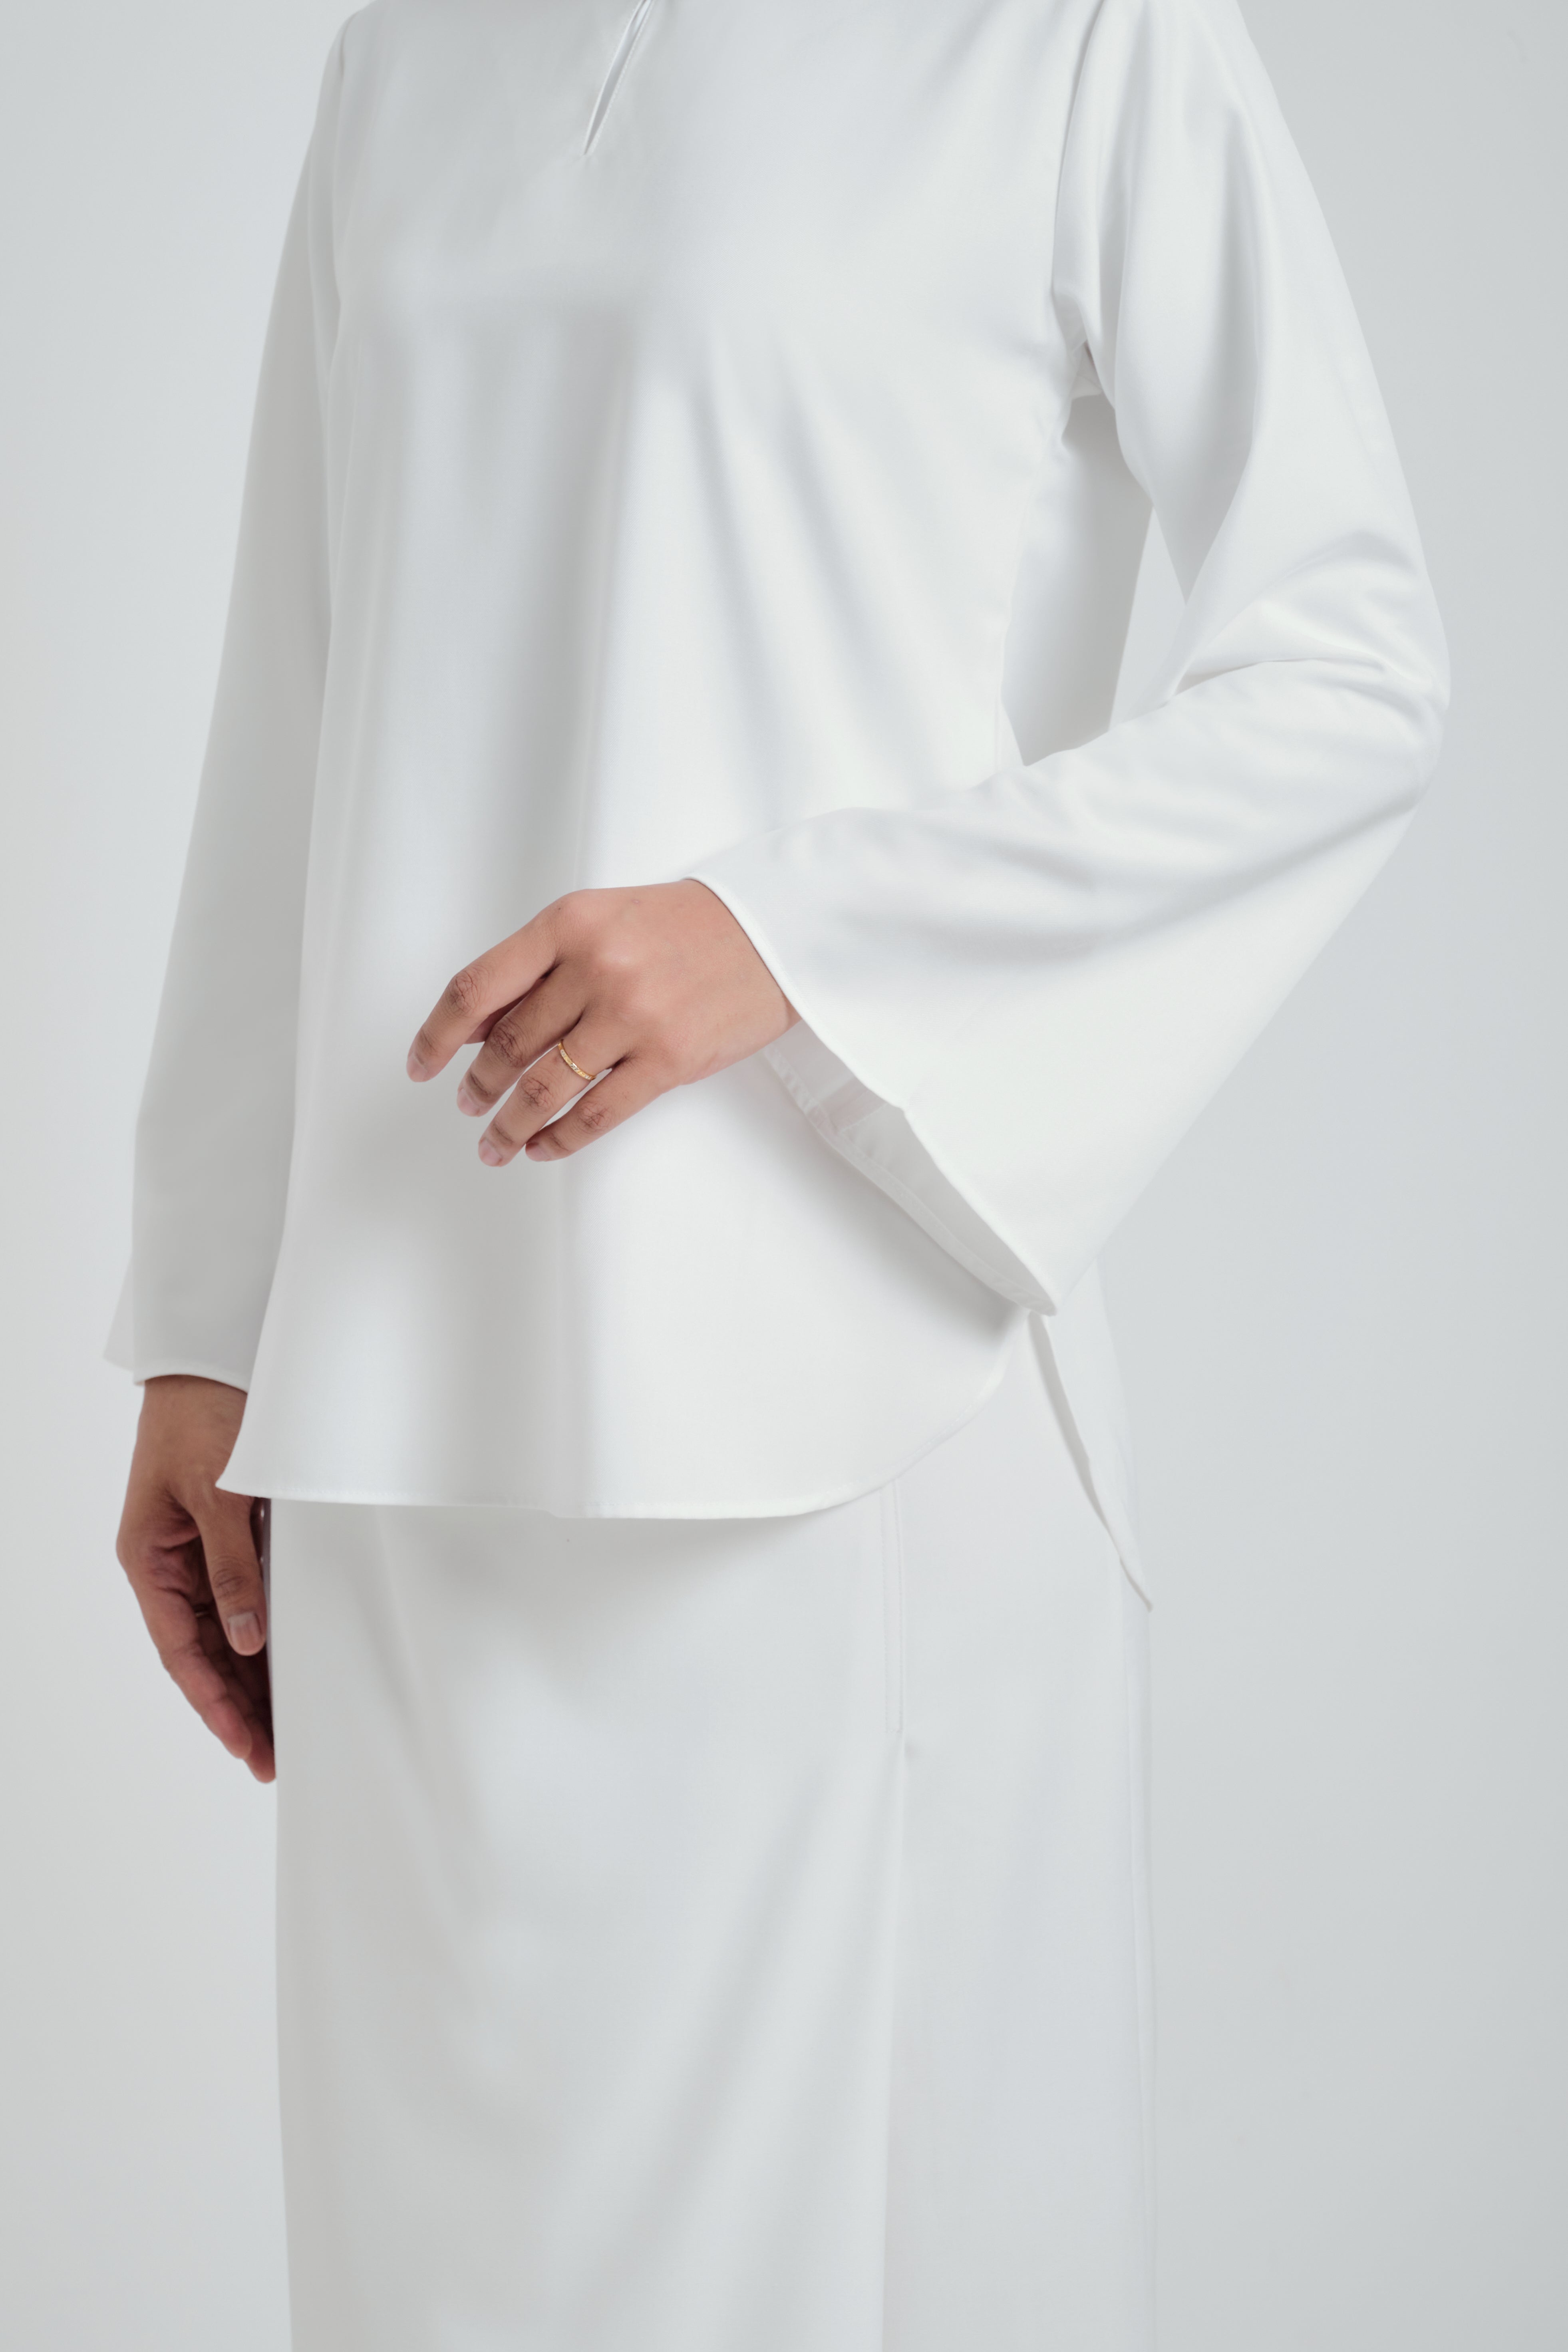 Patawali Baju Kurung - Blanc White